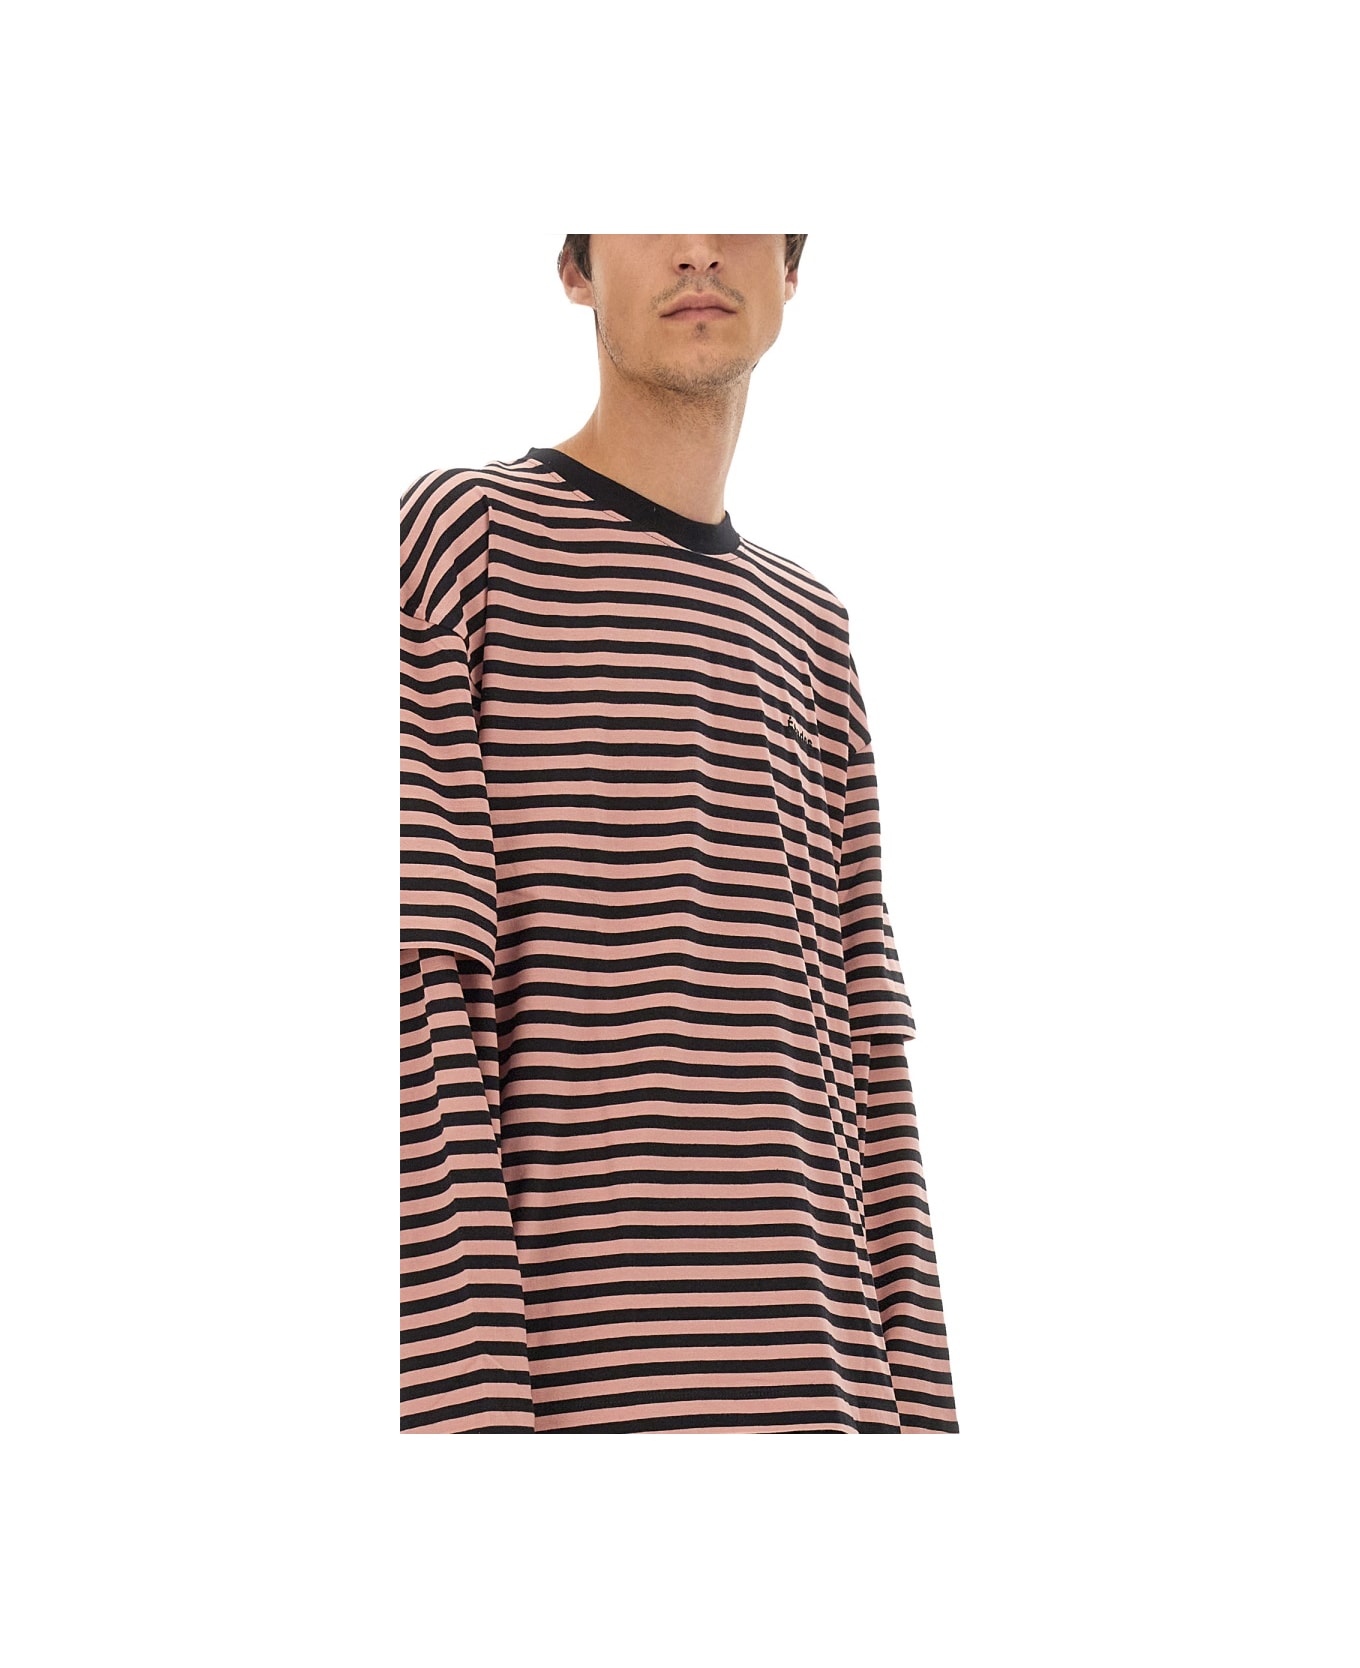 Études T-shirt With Stripe Pattern - MULTICOLOUR